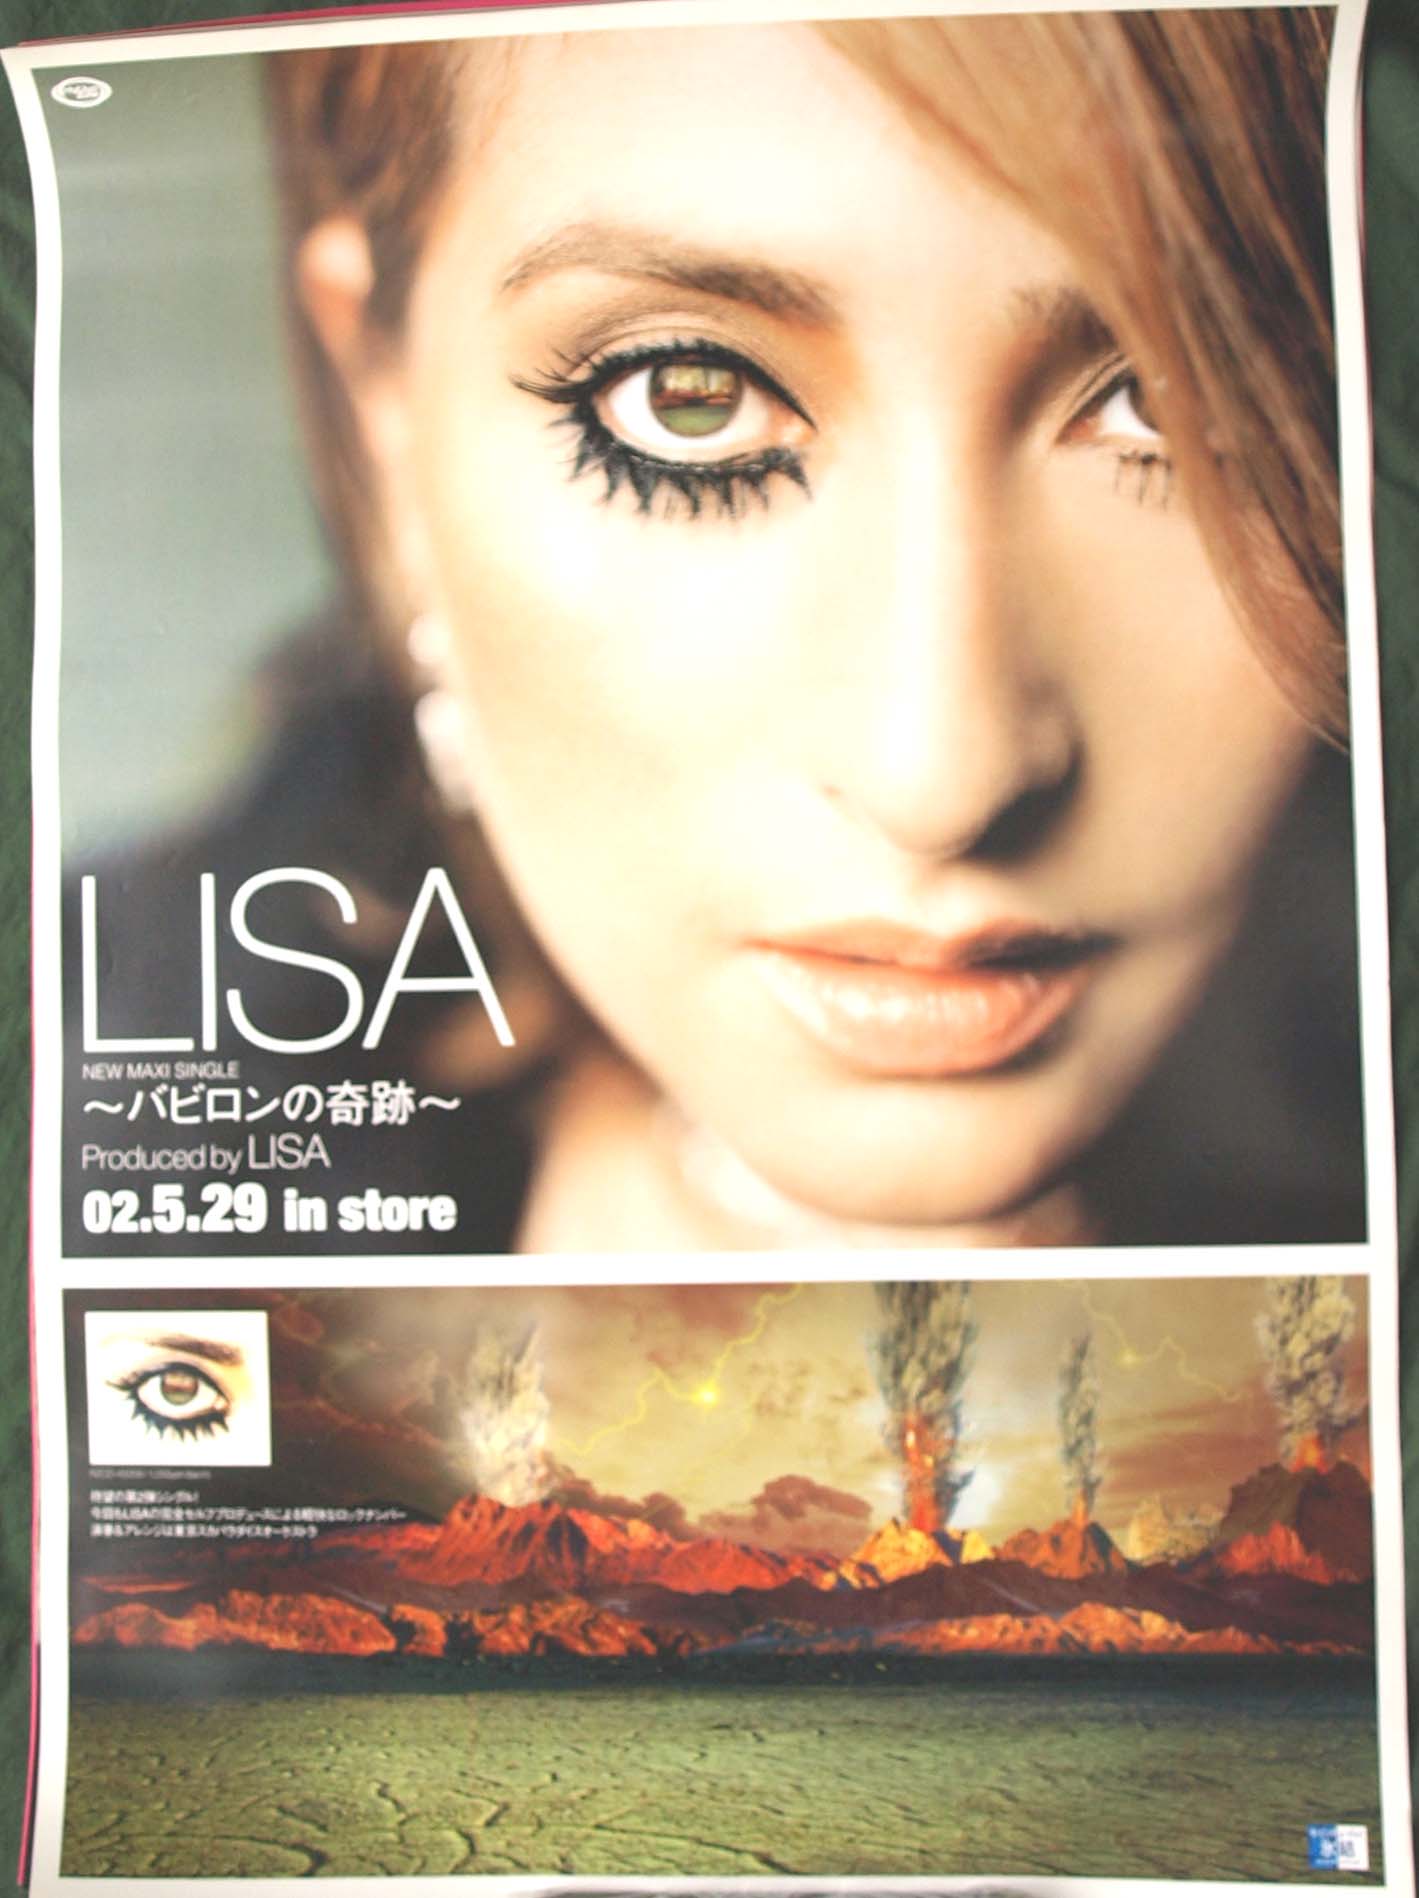 LISA 「バビロンの奇跡」